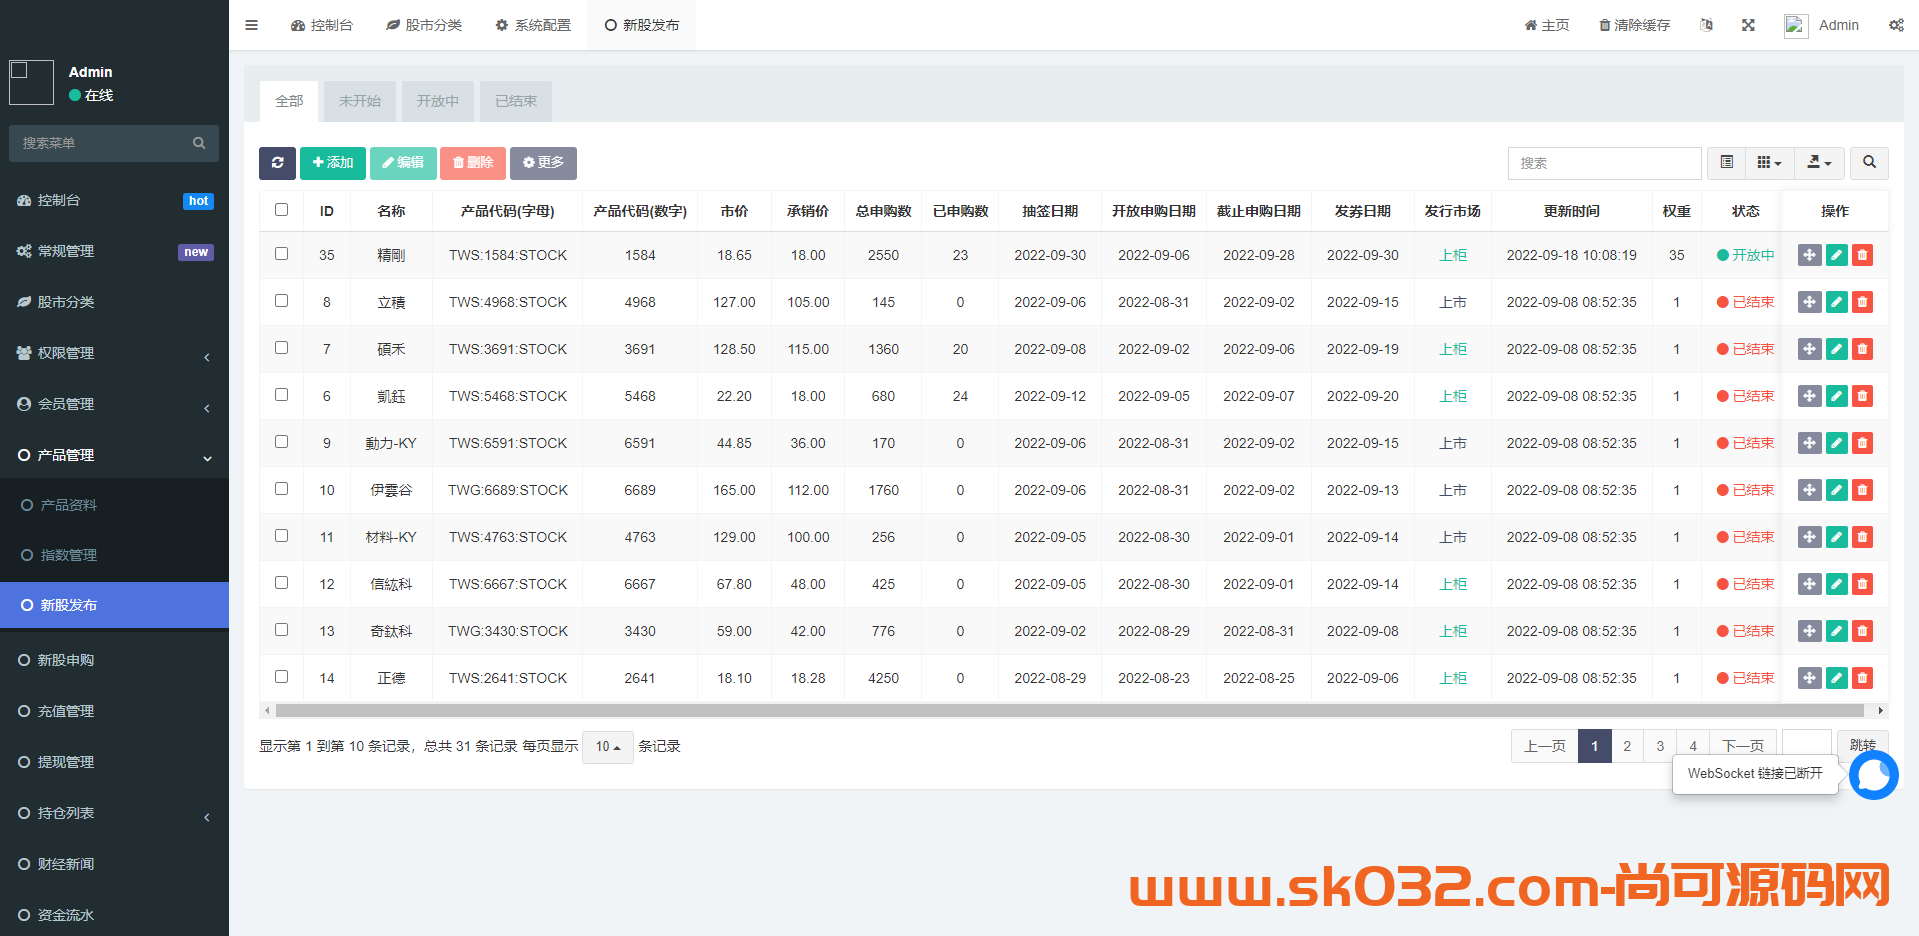 版uinapp股票配资源码/台湾股票系统/申购折扣交易系统插图1